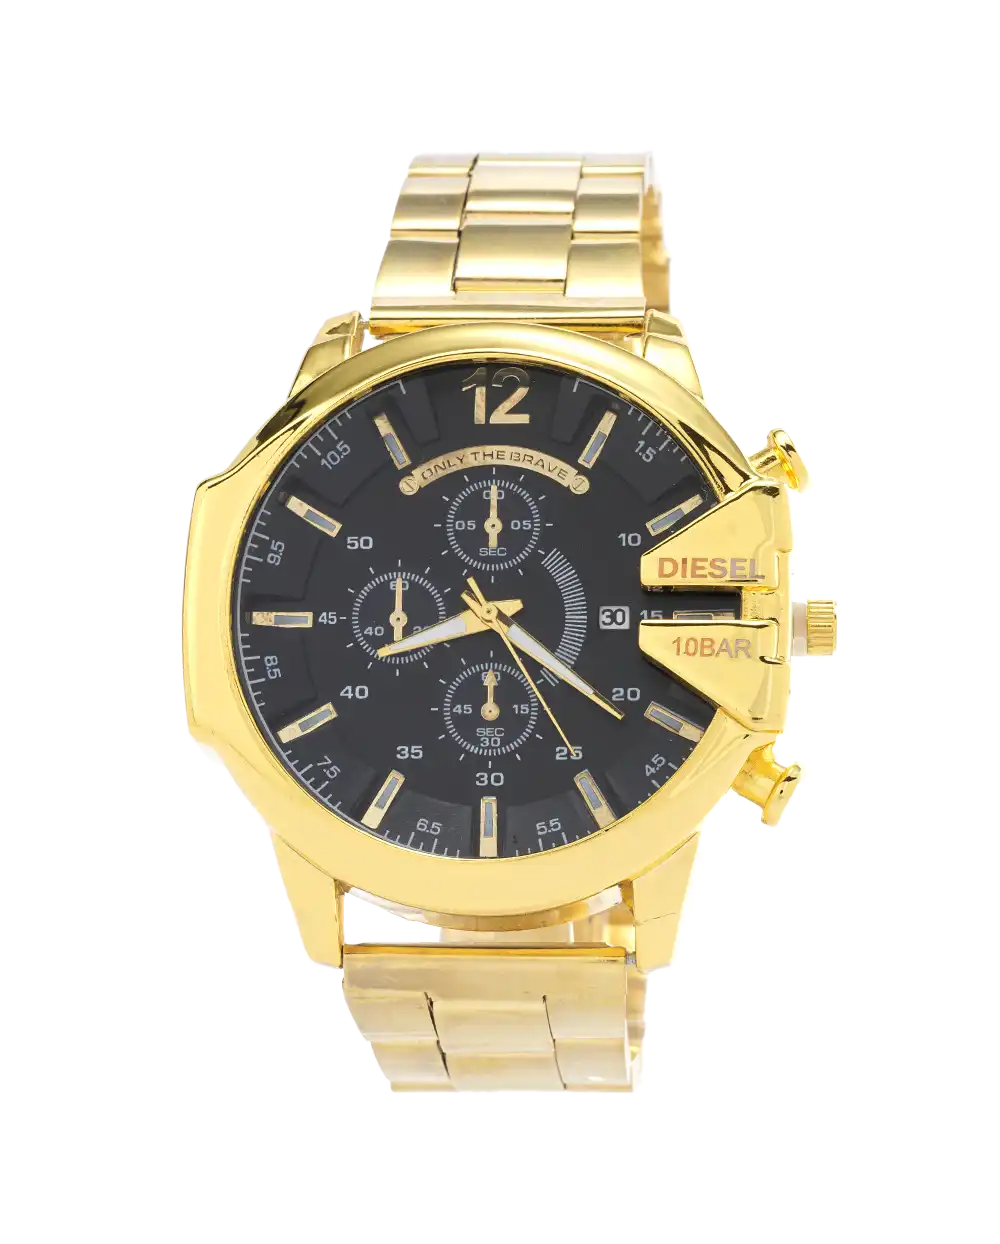 ساعت مچی مردانه دیزل DIESEL مدل 1728 های کپی رنگ طلایی با بهترین قیمت به همراه ارسال رایگان و جعبه ی مخصوص به سراسر ایران | DIESEL های کپی